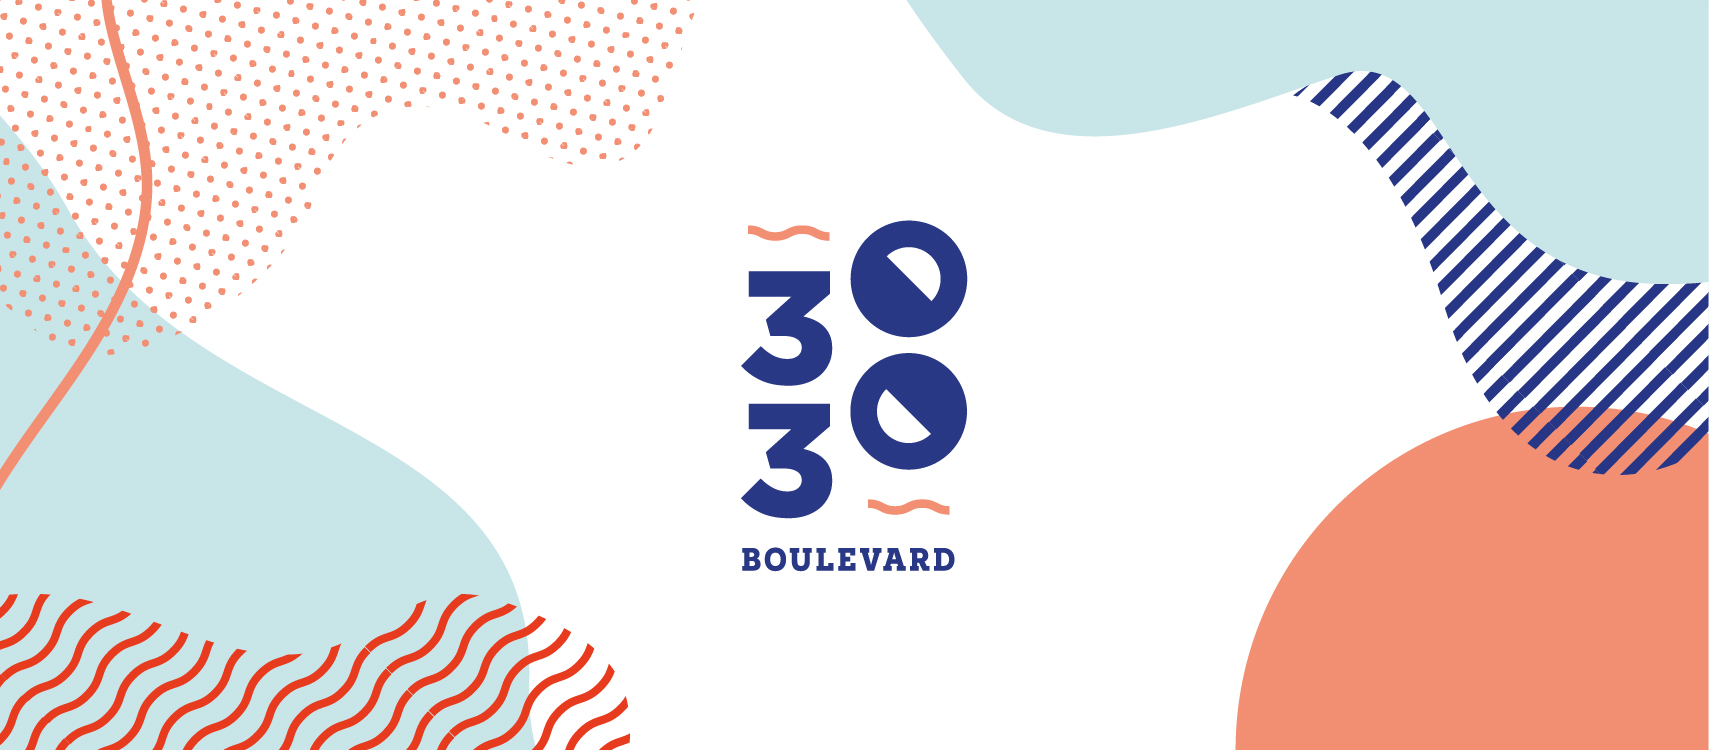 3030 Boulevard Logo